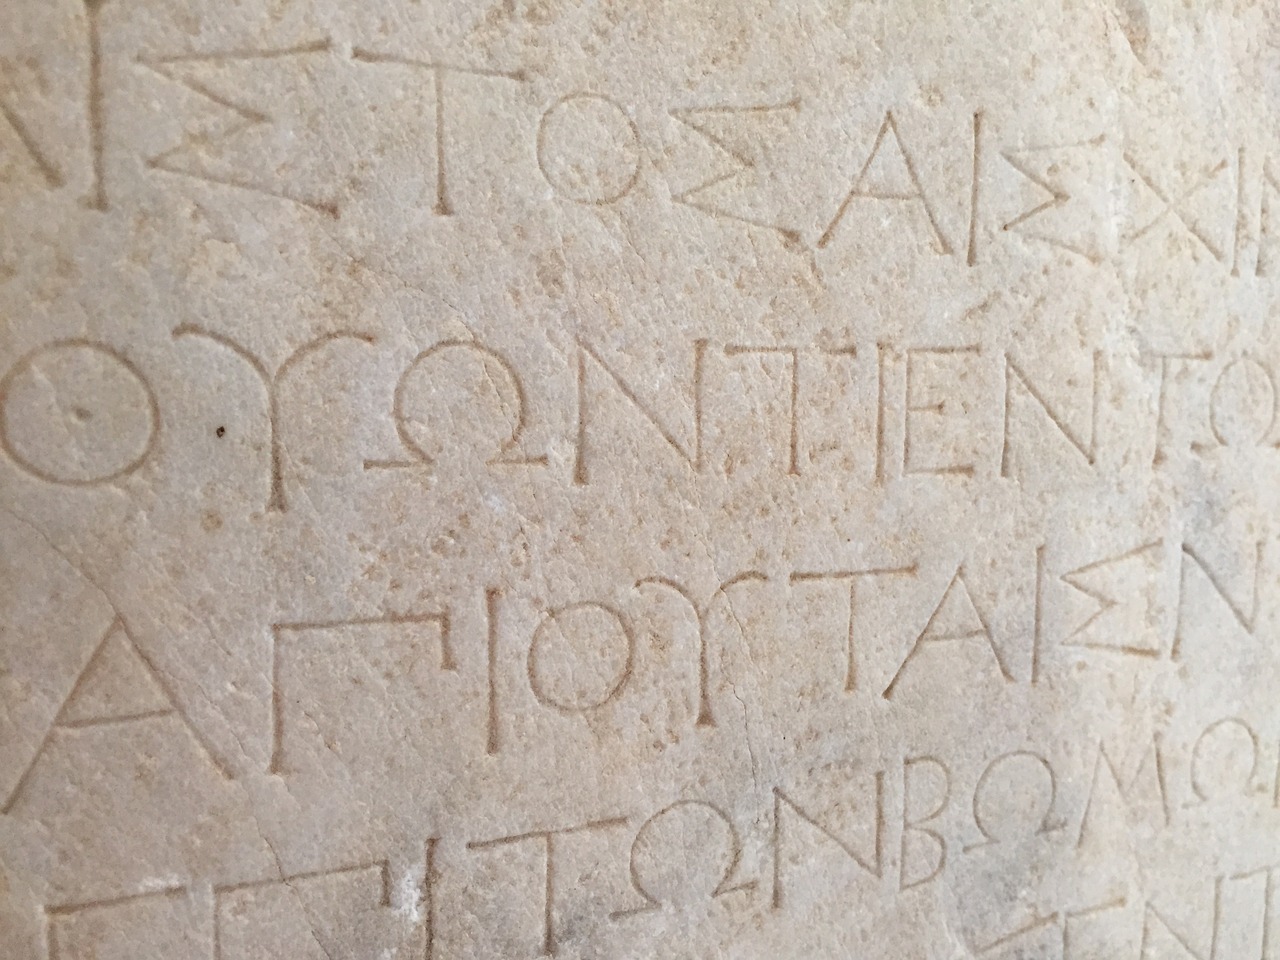 greek scripture language free photo